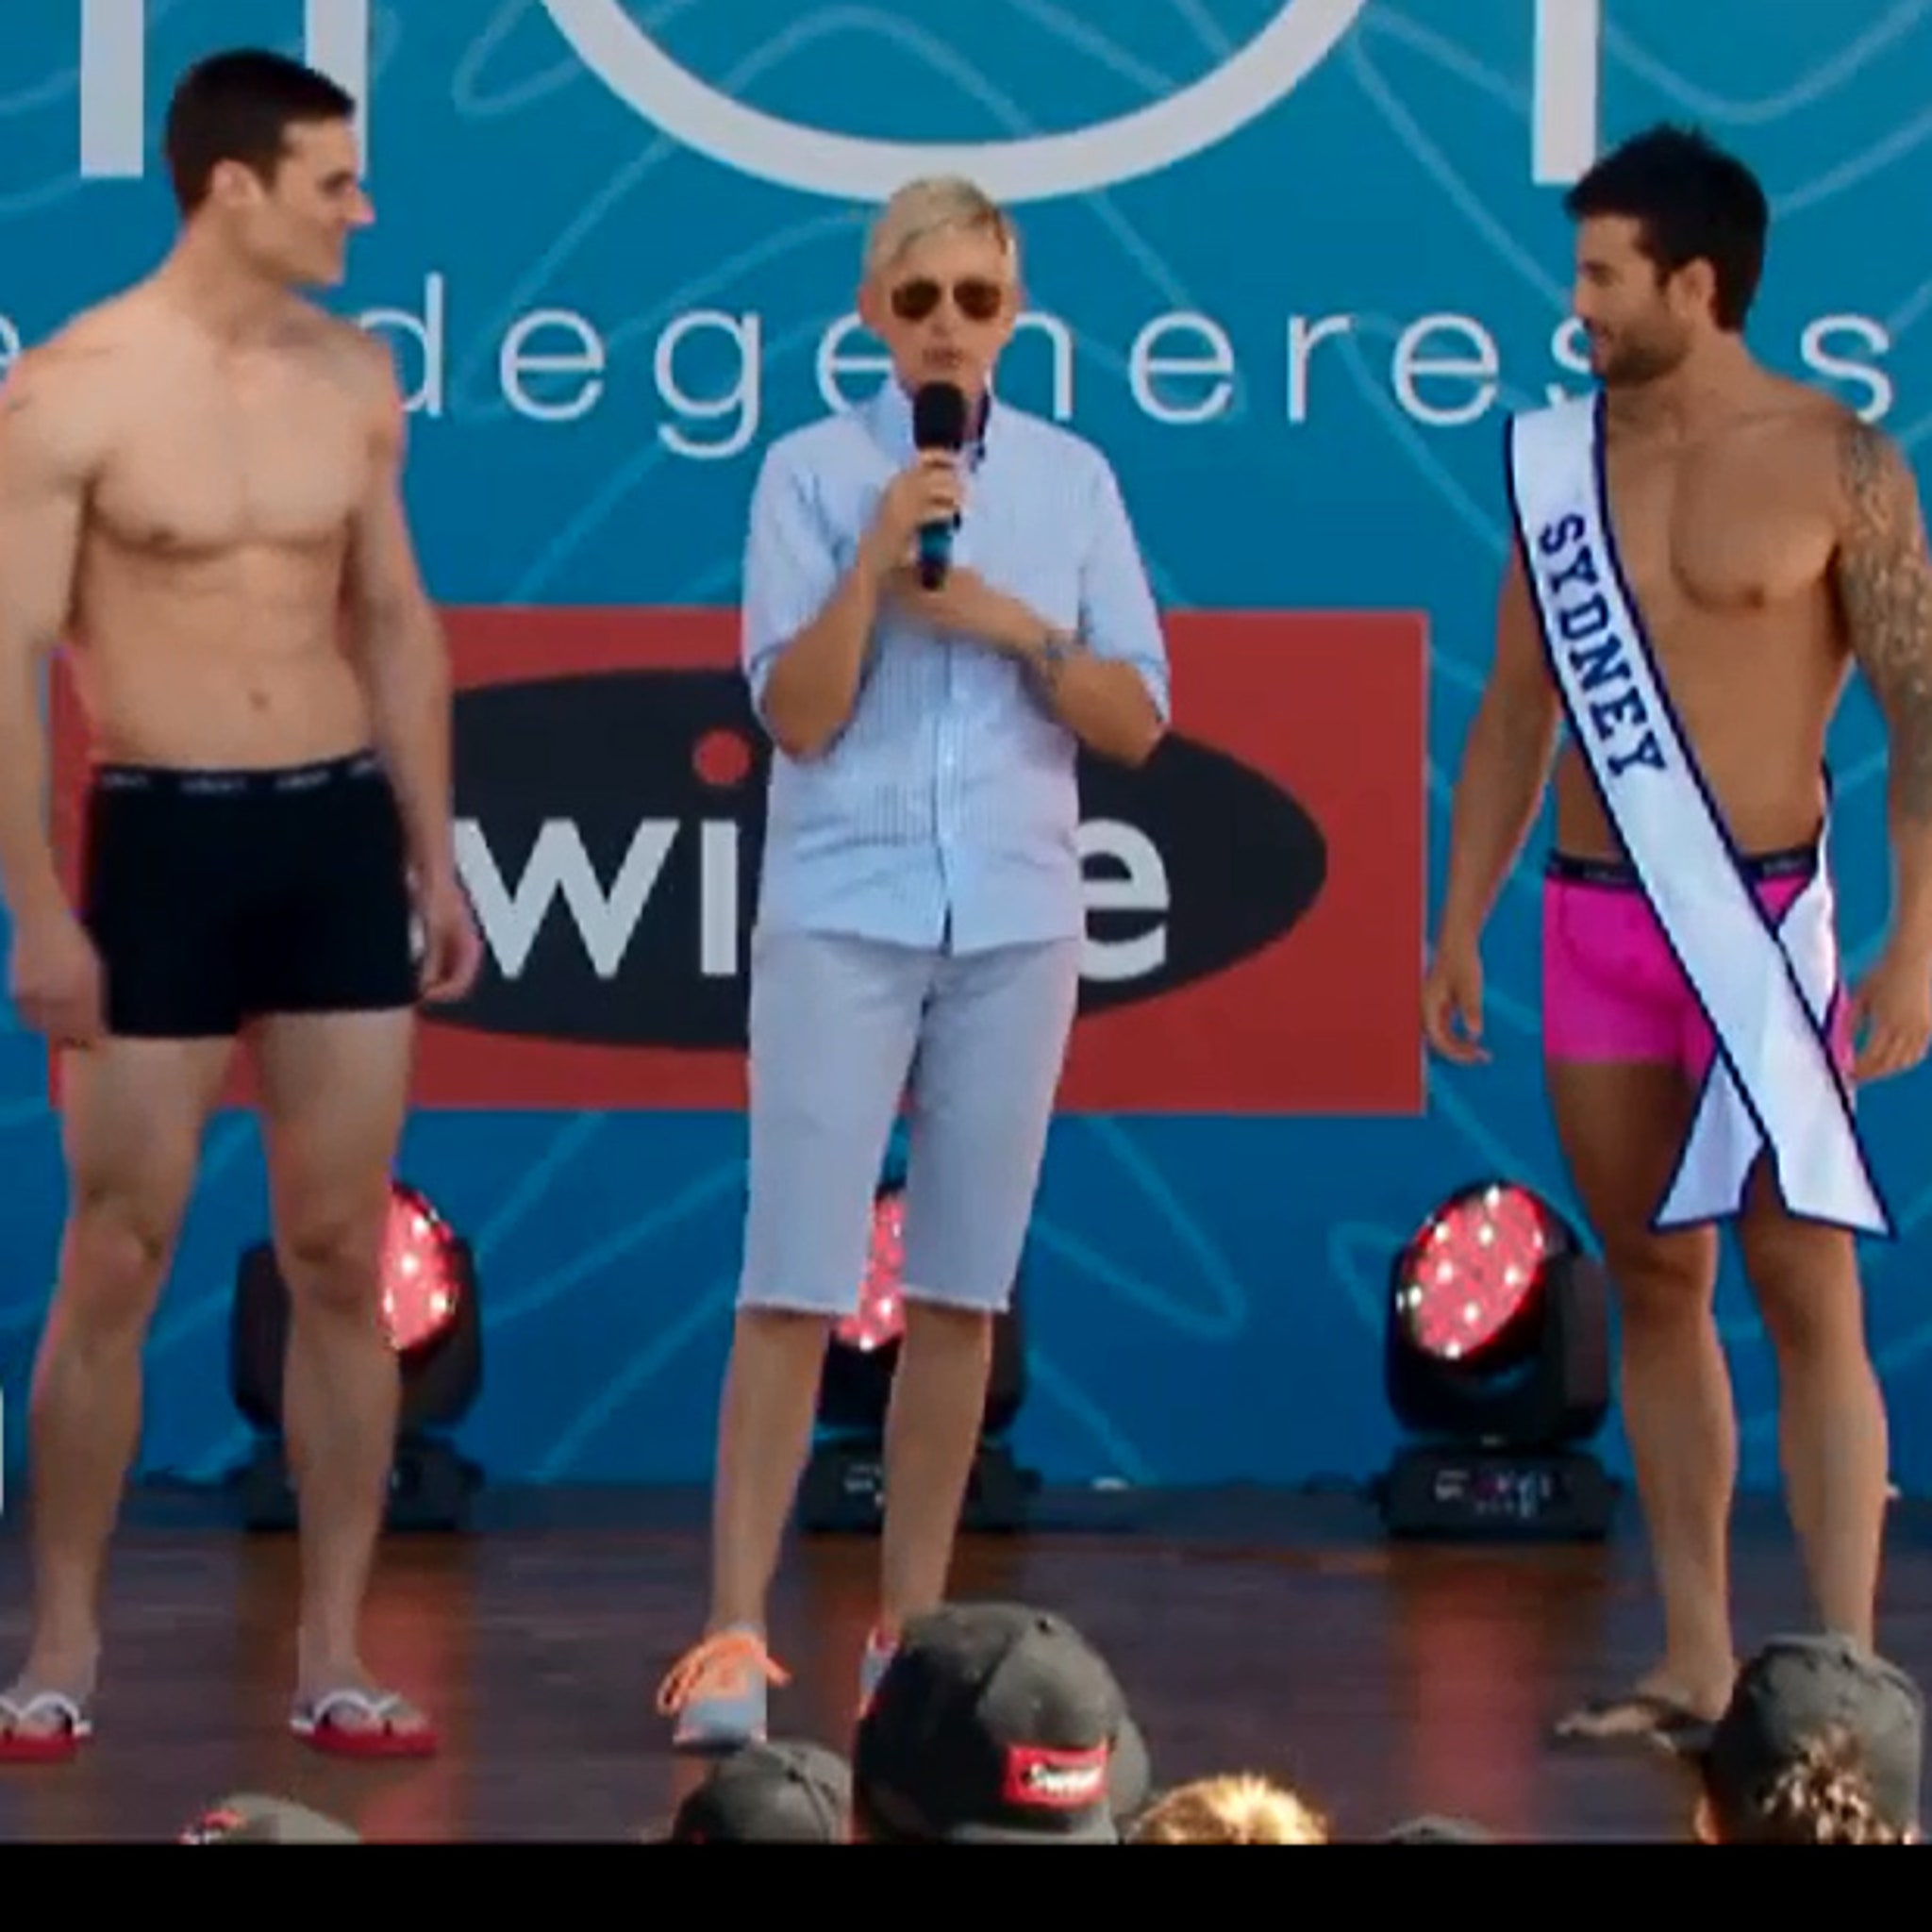  Ellen Degeneres Underwear For Men